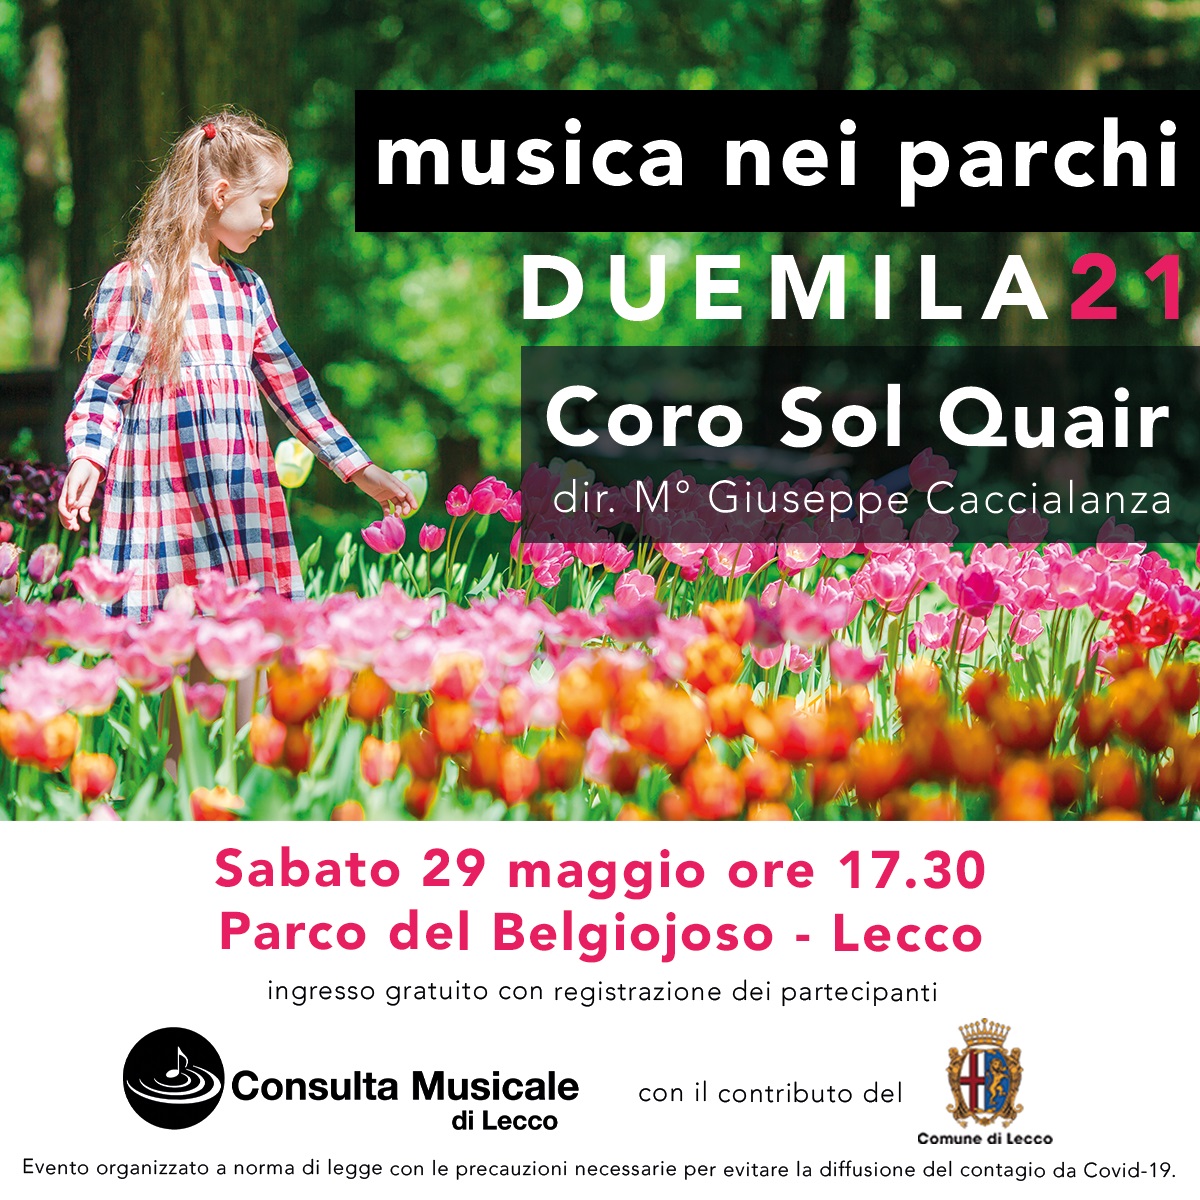 Musica nei parchi - Lecco 29 maggio 2021 ore 17.30 - Concerto del Coro Sol Quair, al Parco Belgiojoso